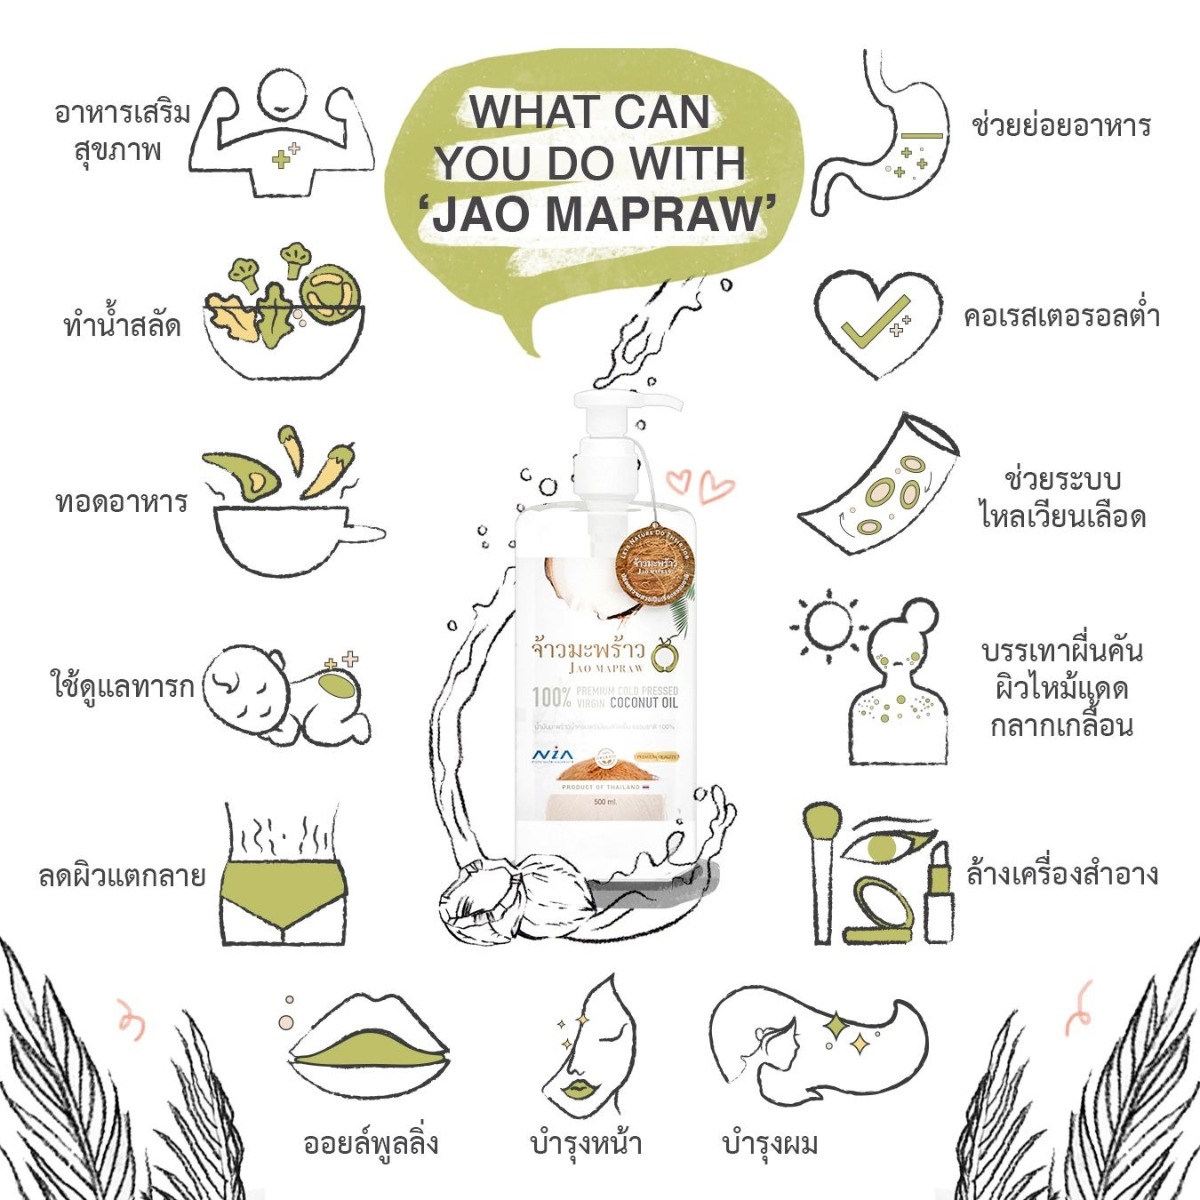 Jao Mapraw, จ้าวมะพร้าว, Jao Mapraw น้ำมันมะพร้าว, Jao Mapraw รีวิว, Jao Mapraw ราคา, น้ำมันมะพร้าวน้ำหอมพรีเมี่ยมสกัดเย็น, น้ำมันมะพร้าว, น้ำมันมะพร้าวบริสุทธิ์, น้ำมันมะพร้าวบริสุทธิ์ 100%